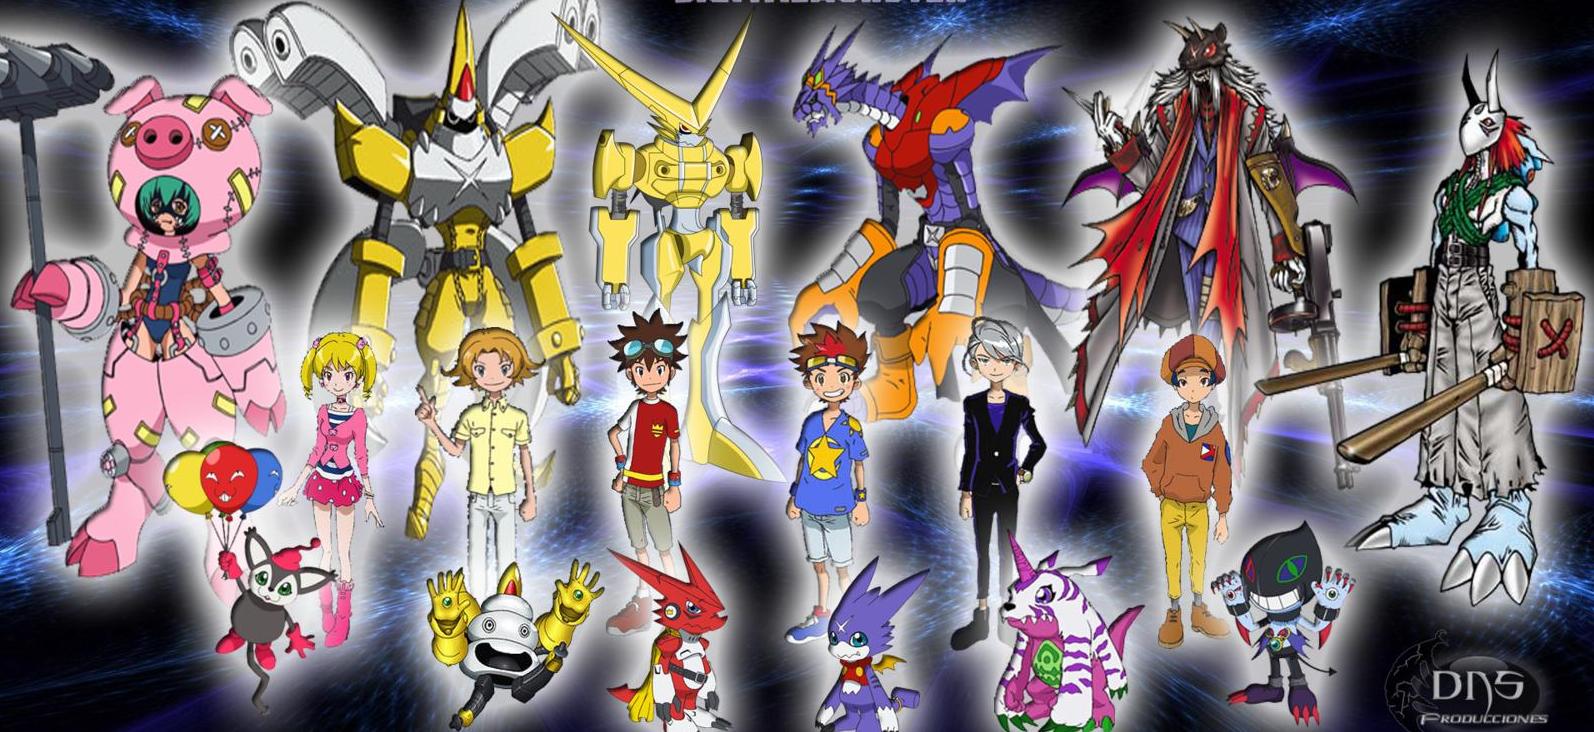 Xem phim Digimon Xros Wars (Ss7) - Digimon Fusion | Digimon Cross Wars Vietsub